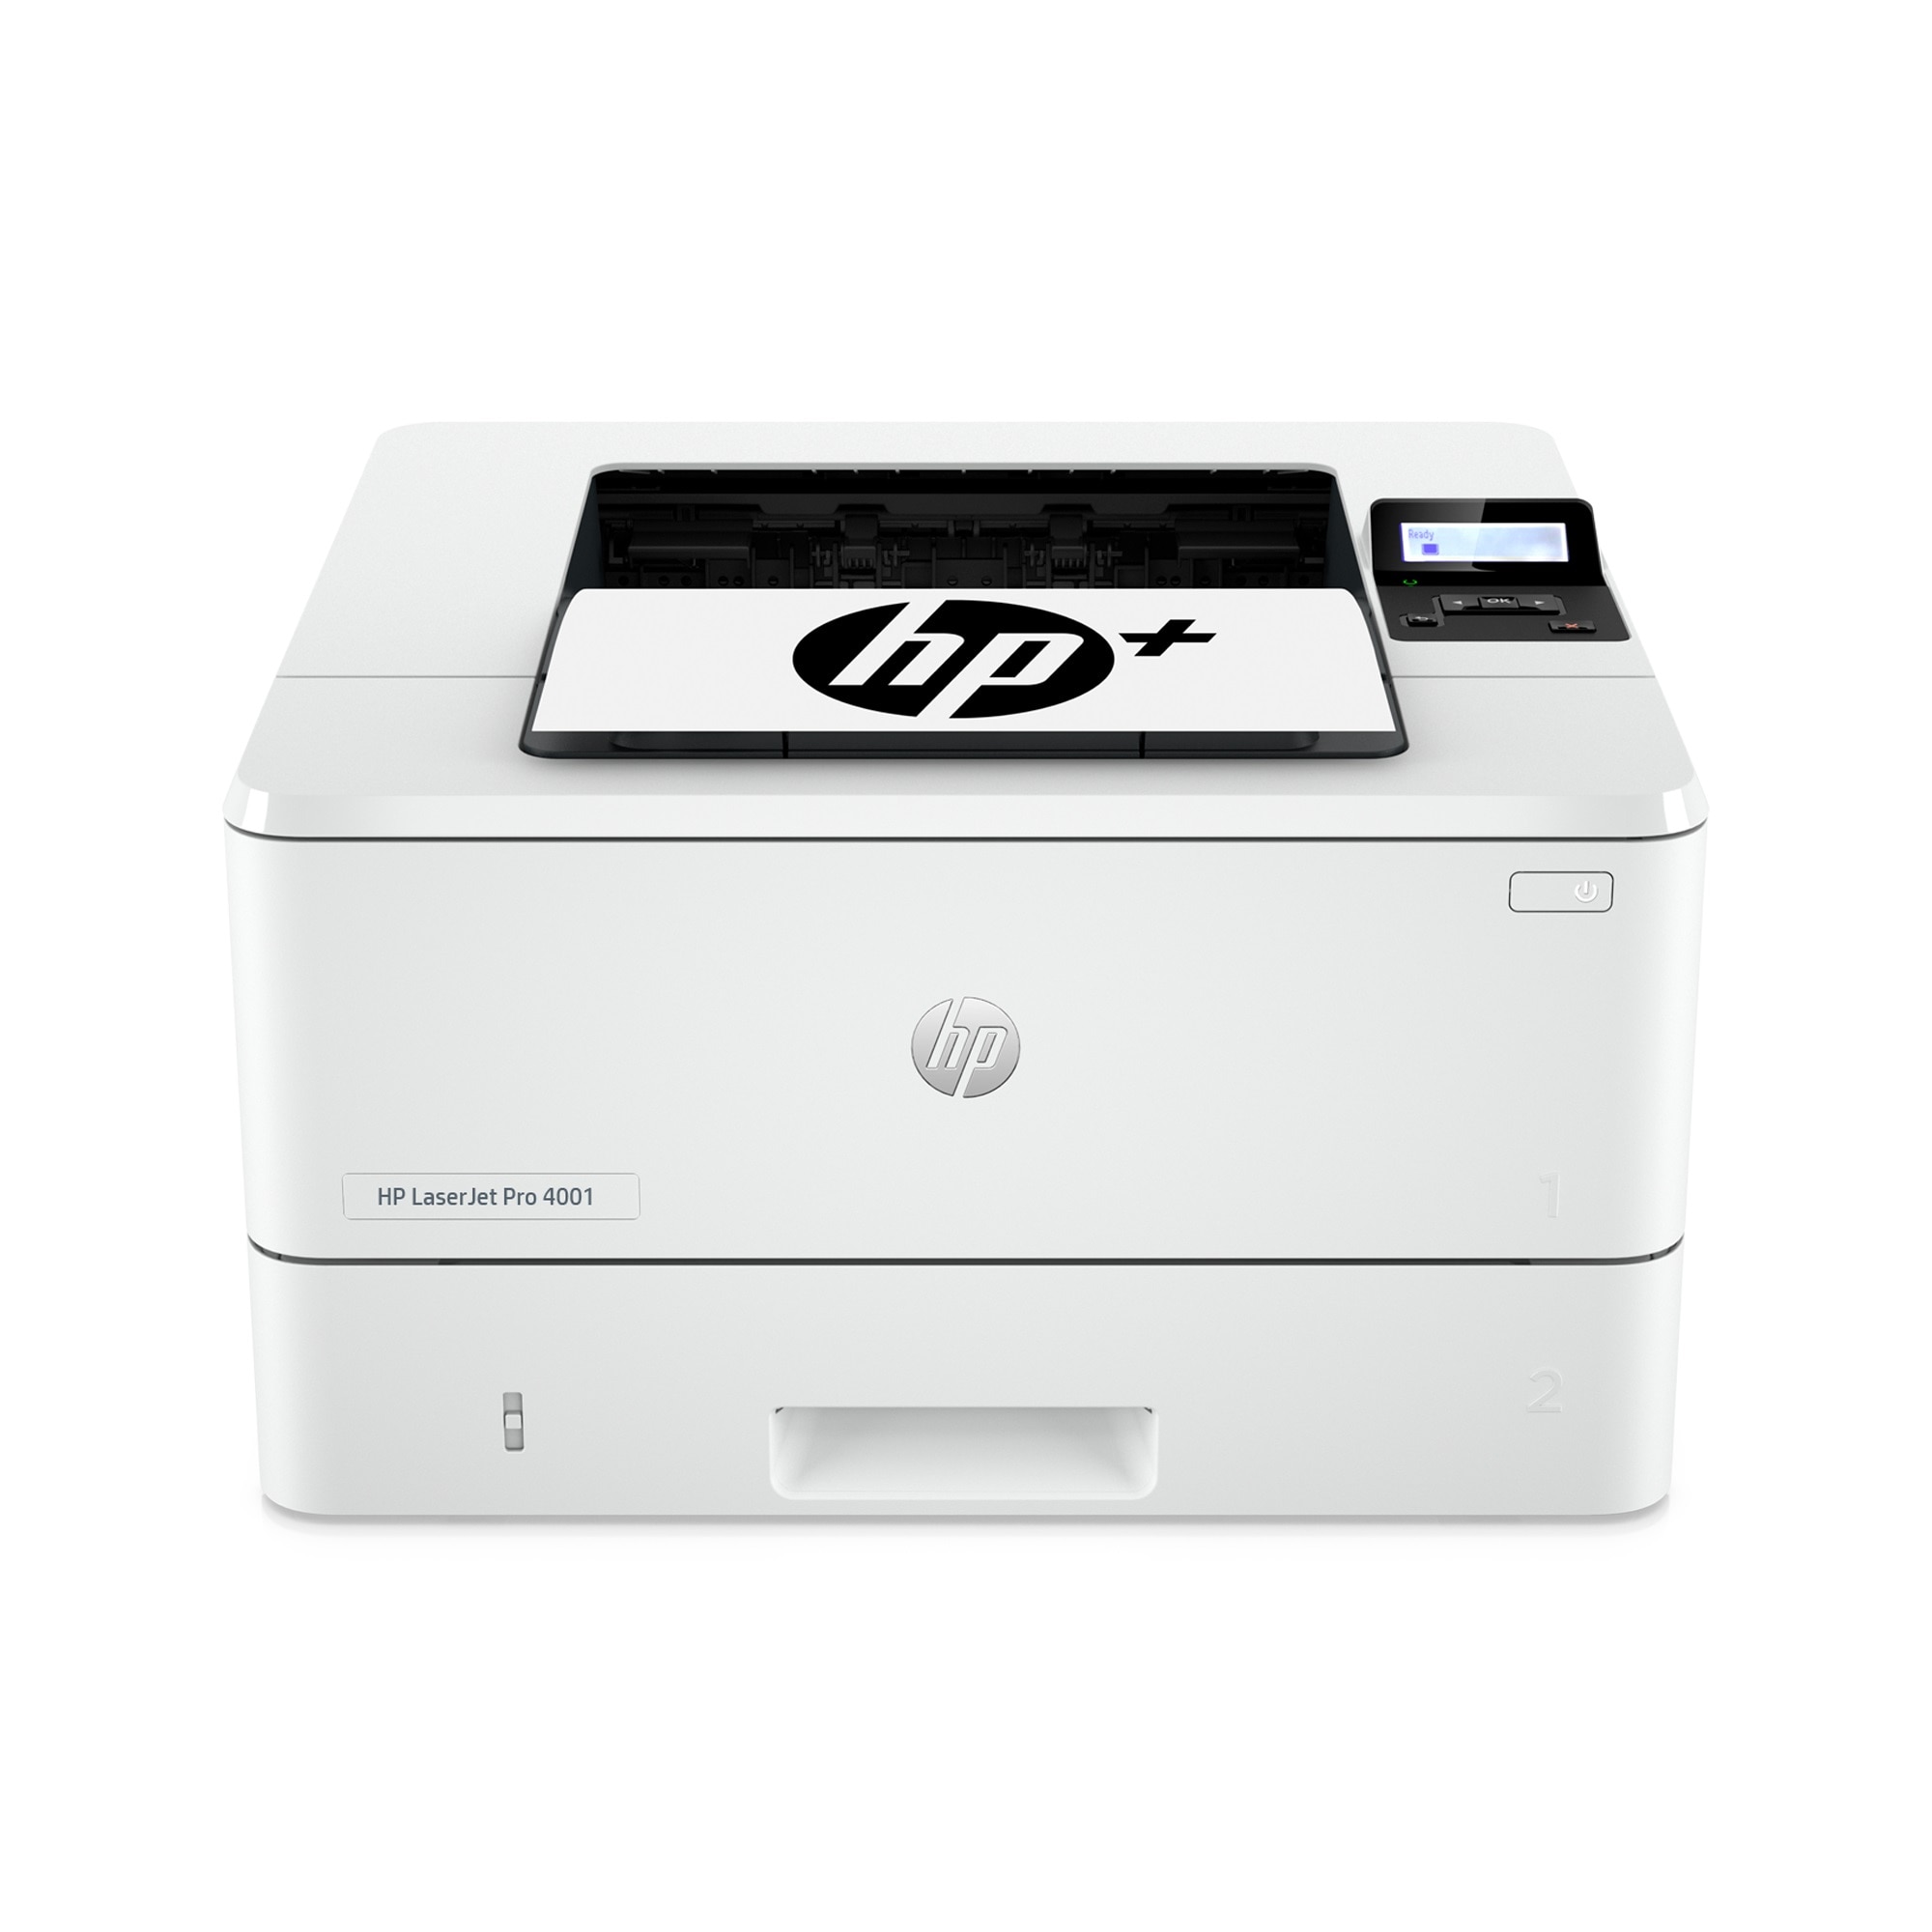 LaserJet Pro 4001dne Printer w HP+